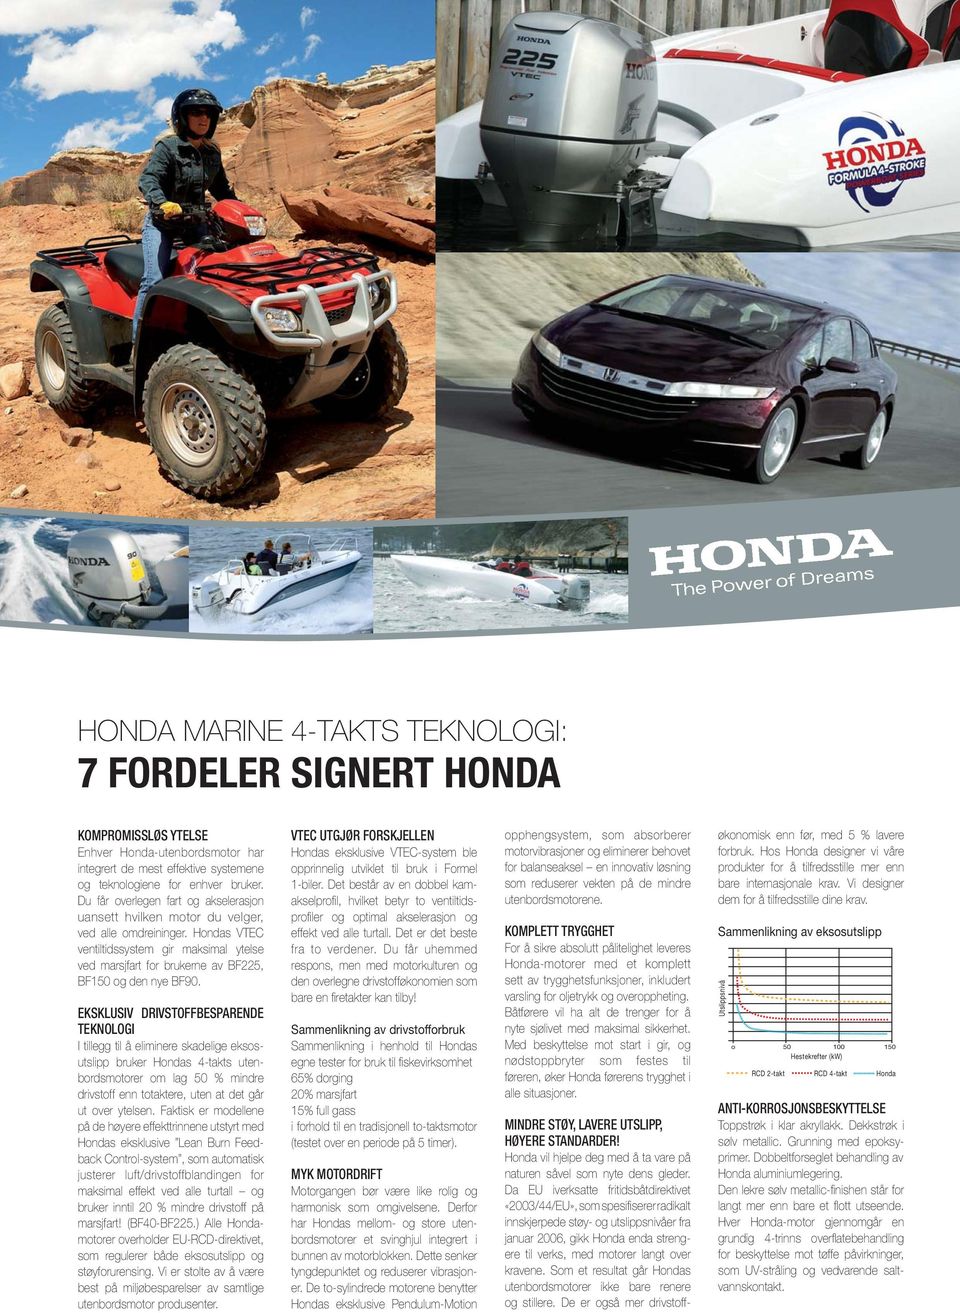 Hondas VTEC ventiltidssystem gir maksimal ytelse ved marsjfart for brukerne av BF225, BF150 og den nye BF90.